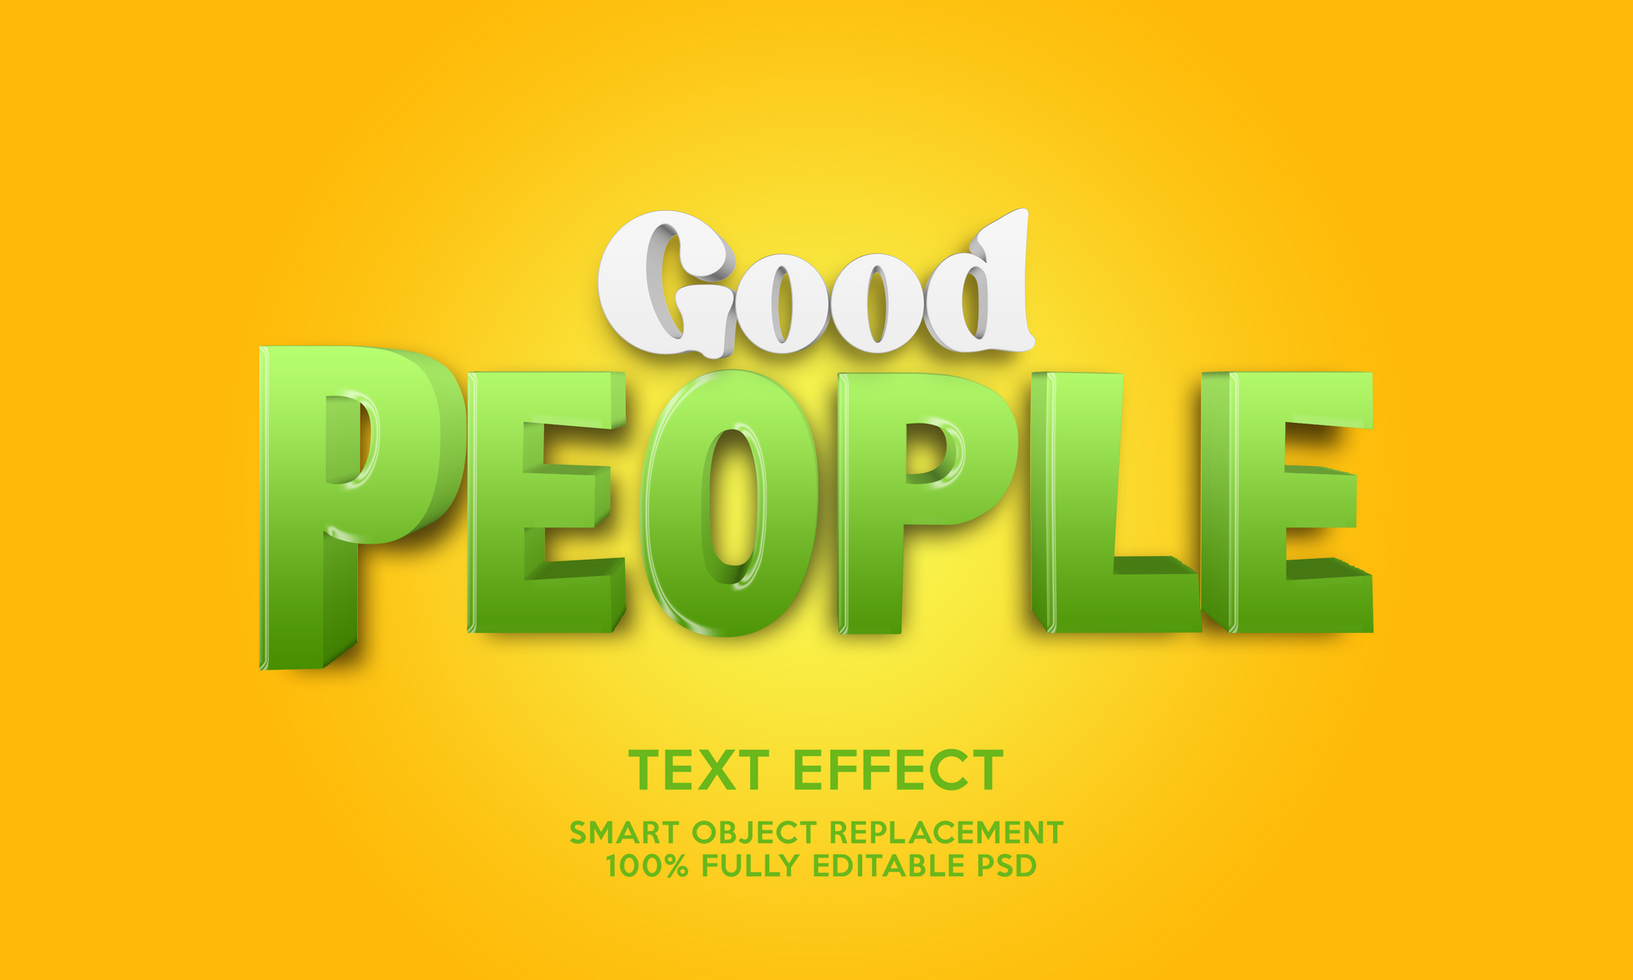 3D text Effect Template psd